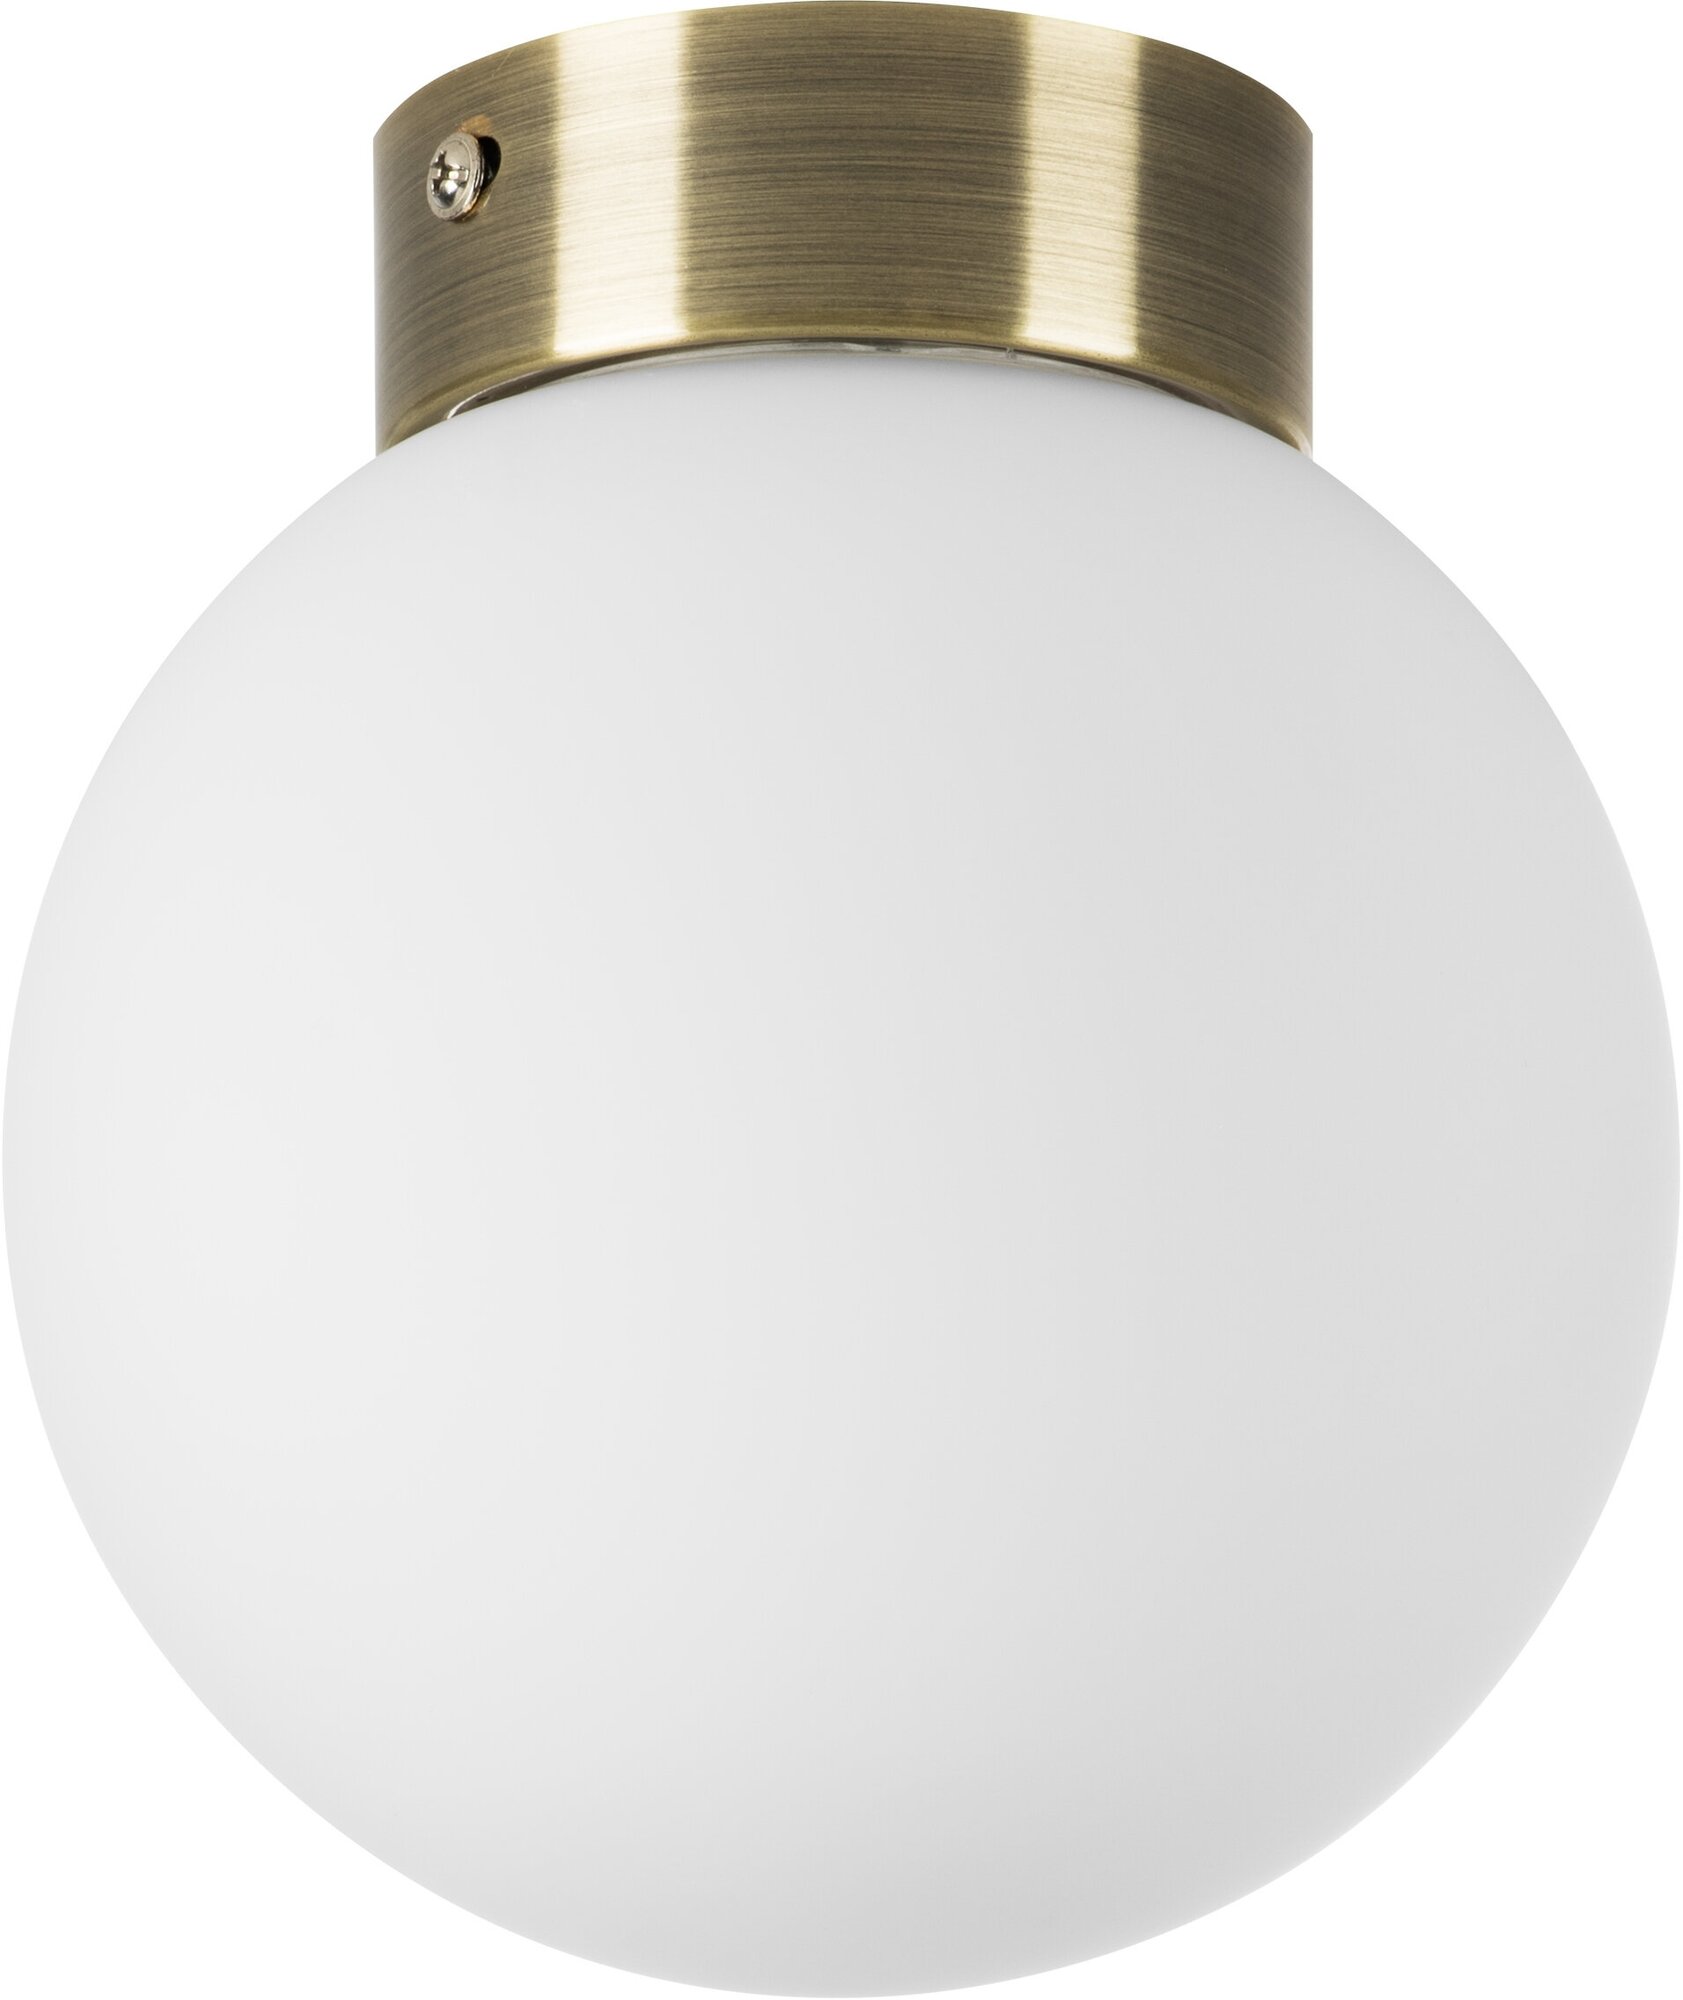 Потолочный светильник круглый в форме шара бронза Lightstar Globo 812011